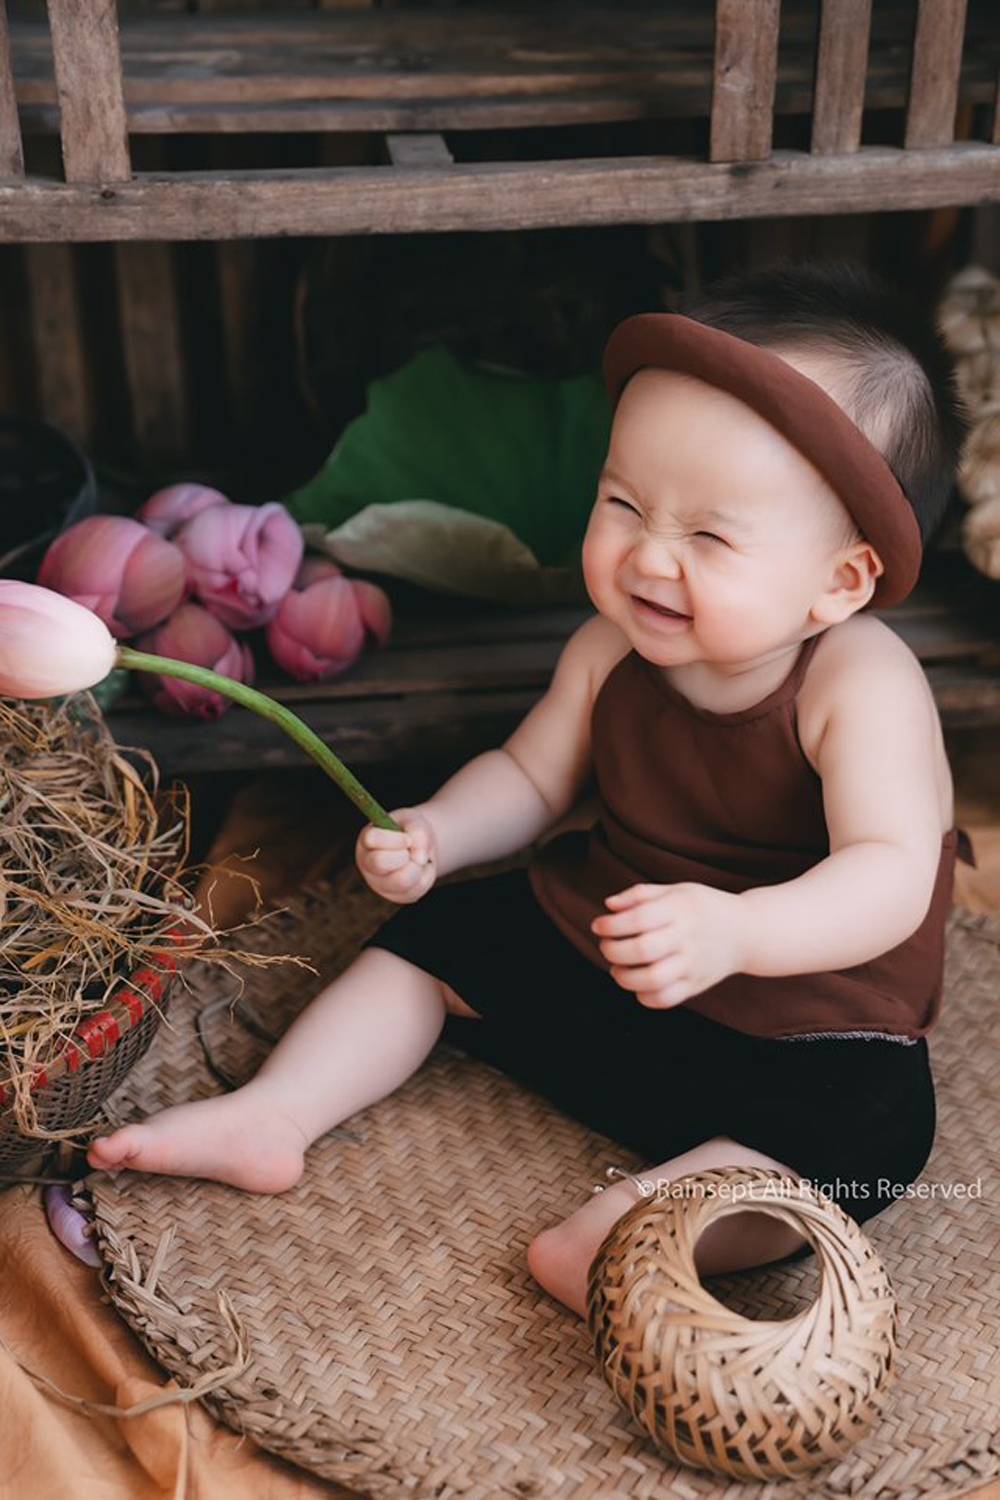 Em bé và hoa sen Ảnh em bé trong khung cảnh hoa sen tươi thắm là điều không thể đẹp hơn. Bạn sẽ bị mê hoặc bởi sự đáng yêu của em bé và vẻ đẹp của hoa sen hòa quyện cùng nhau trong một bức ảnh đầy độc đáo và giàu cảm xúc.